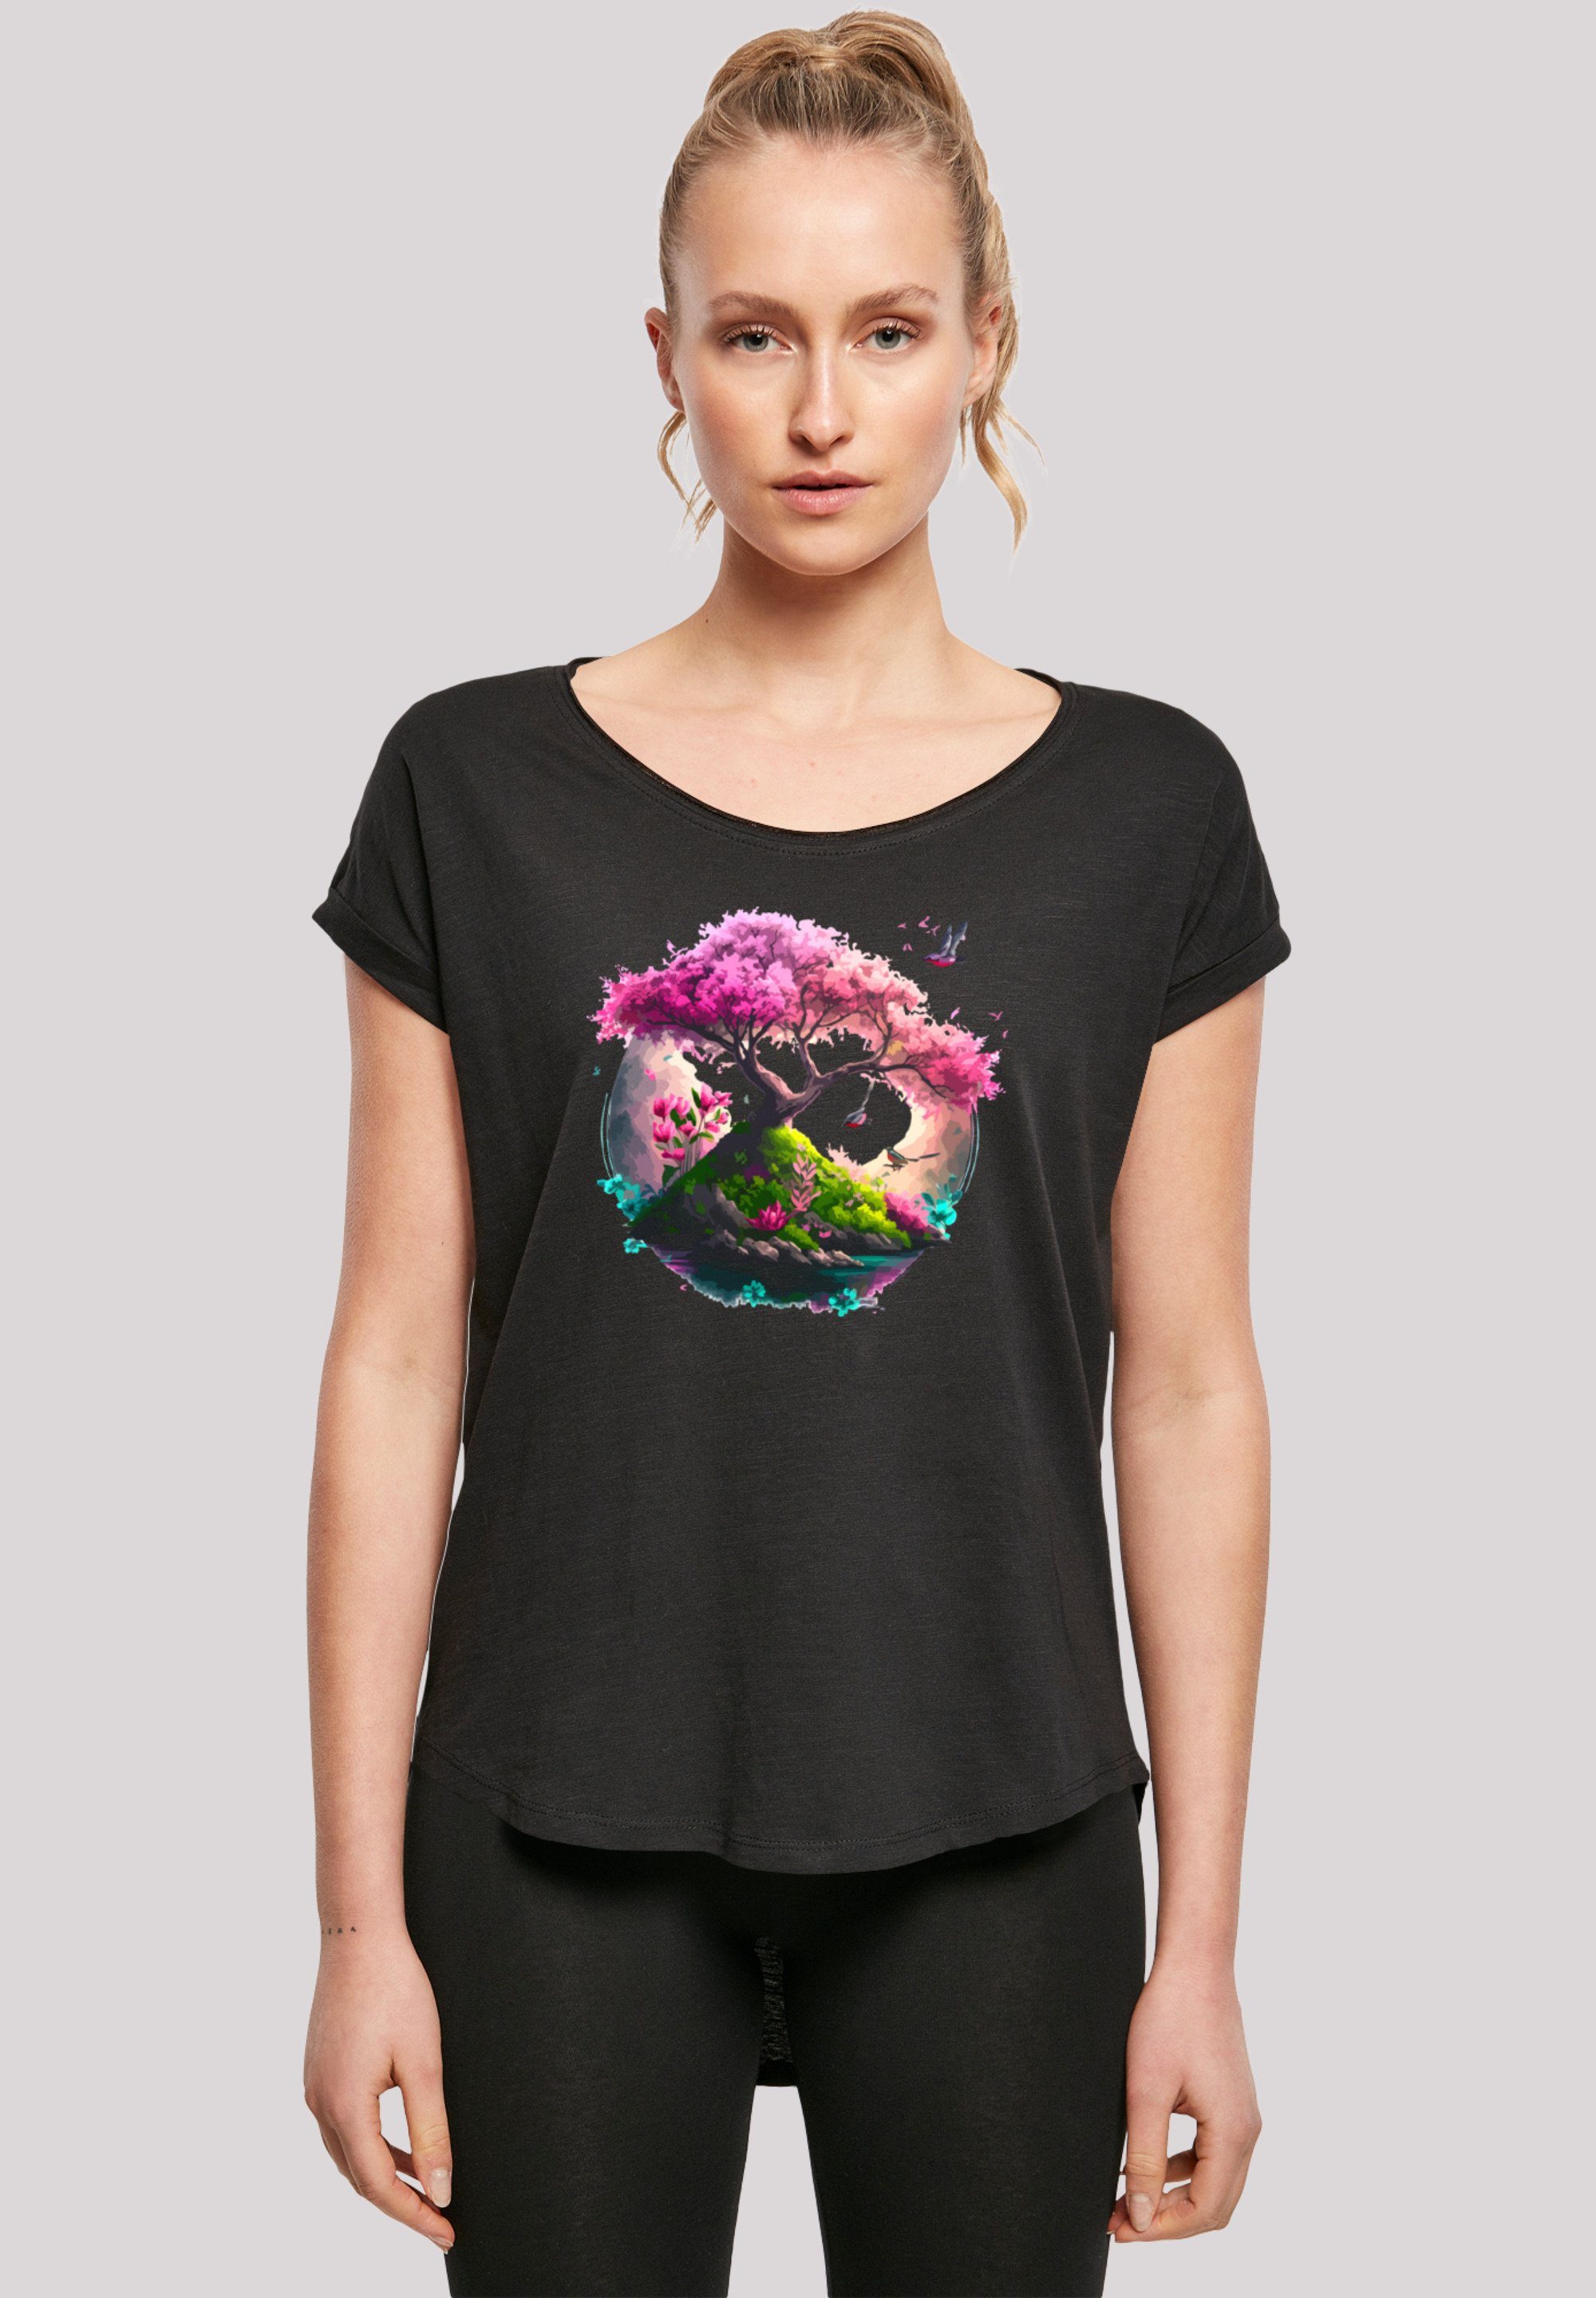 F4NT4STIC T-Shirt Kirschblüten Baum Print schwarz